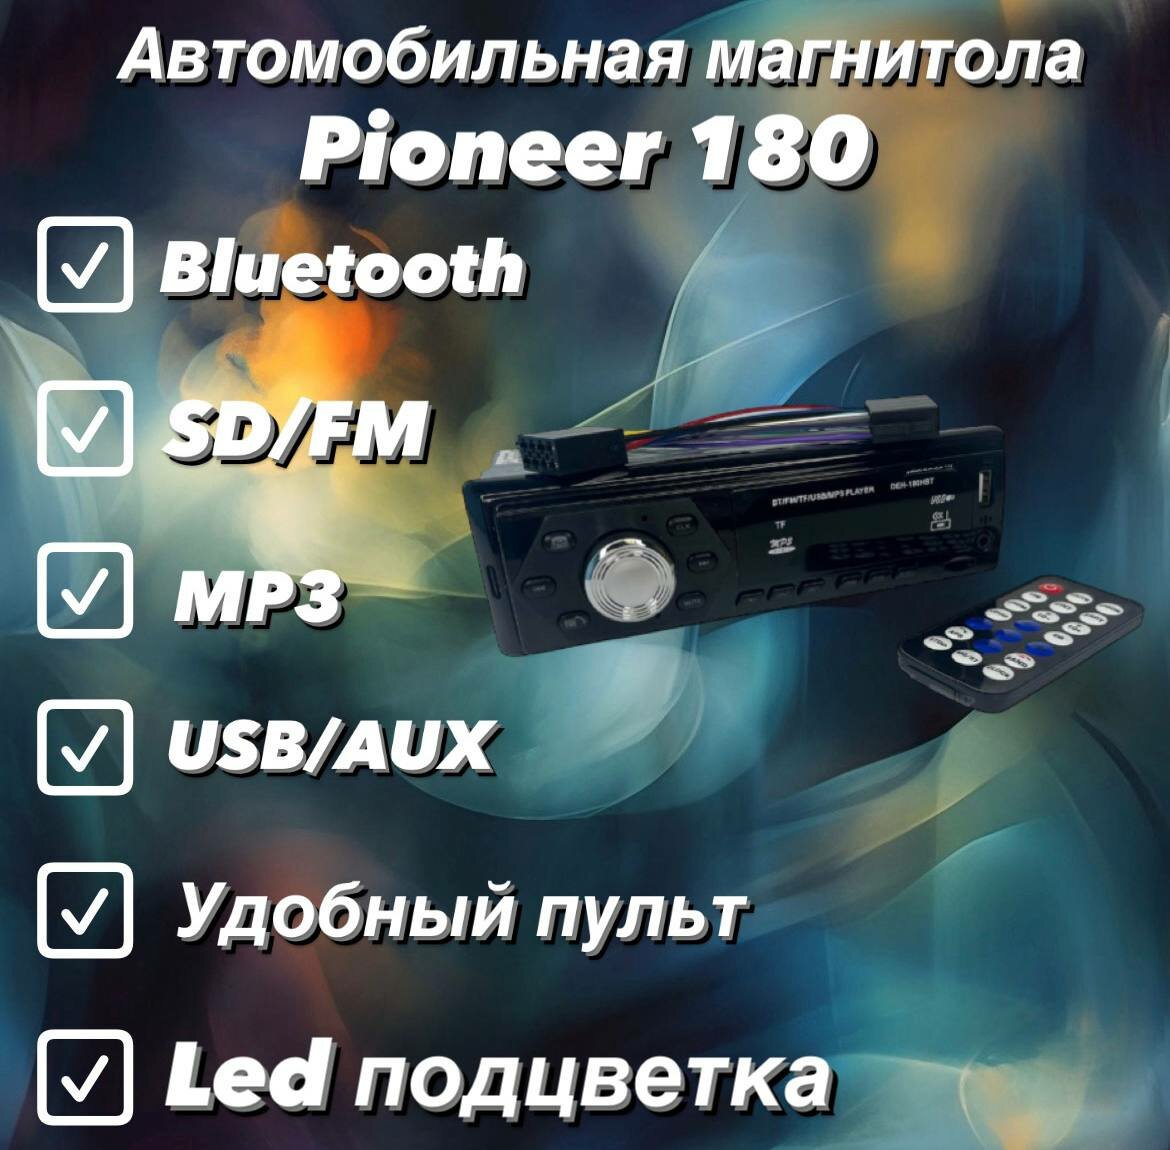 Автомобильная магнитола pioneer 180 с Bluetooth